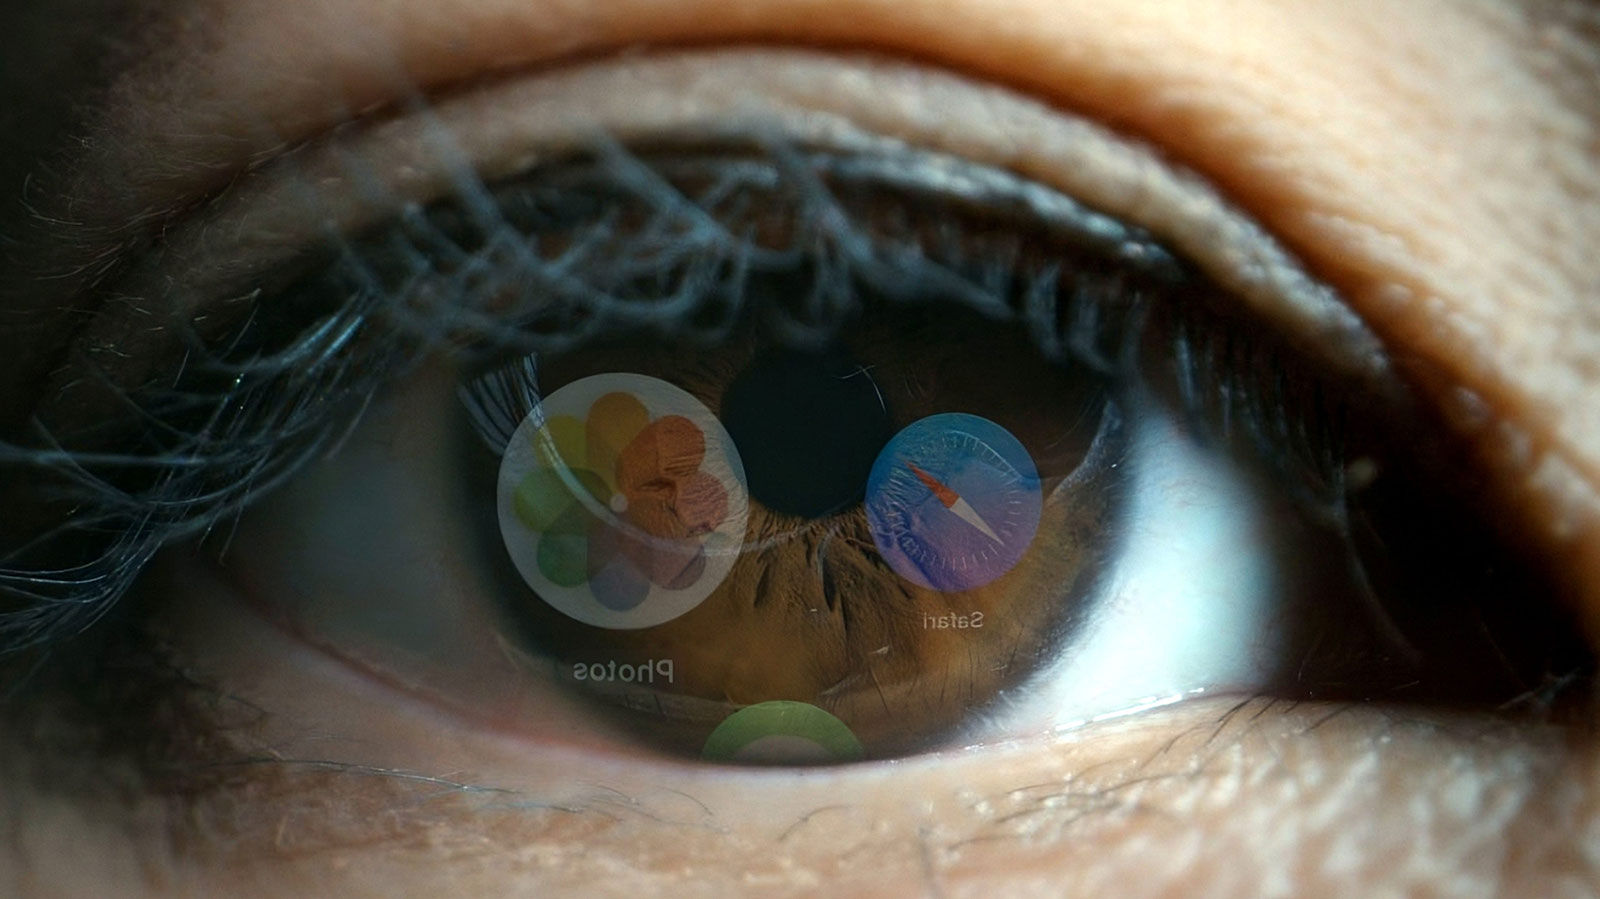 مشکل با لنزهای سخت هدست اپل ویژن پرو